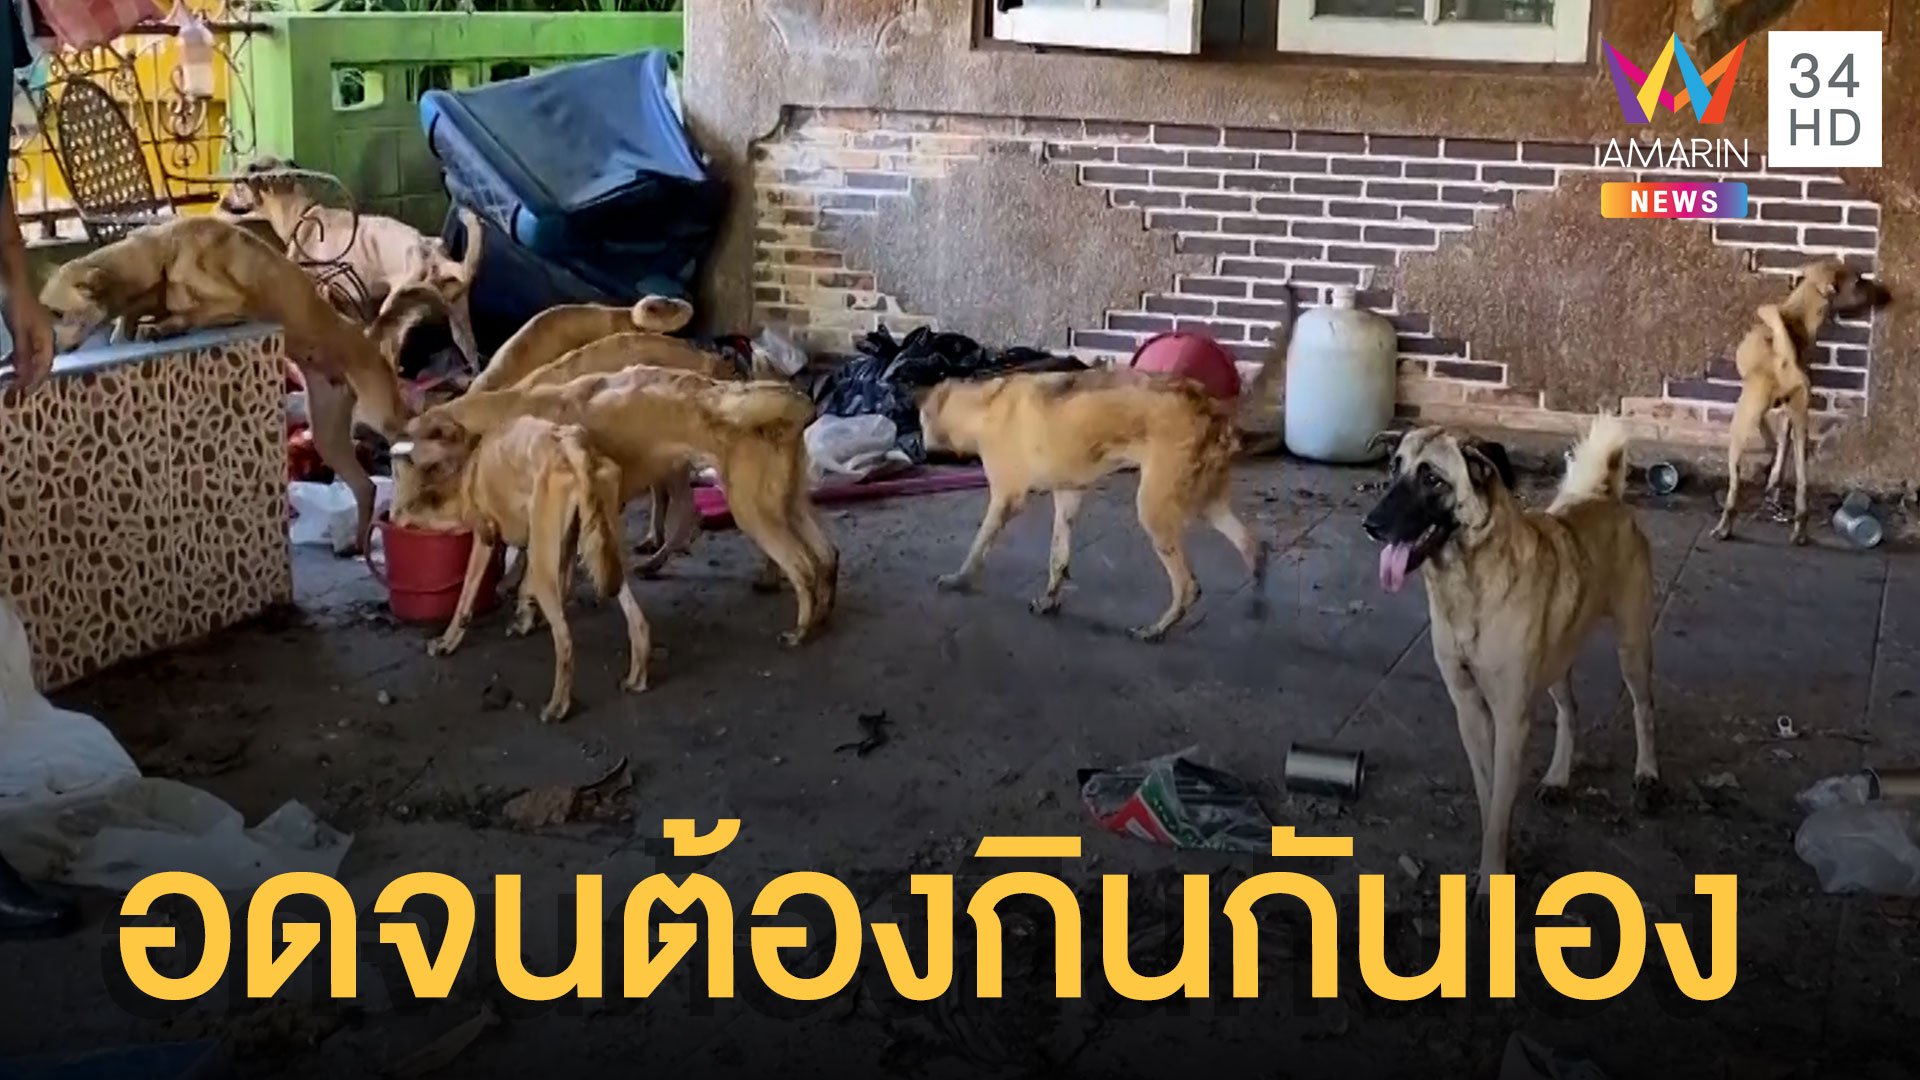 เวทนาสุนัข 15 ตัว ถูกทิ้งให้อดอยากจนต้องกินกันเอง  | ข่าวเที่ยงอมรินทร์ | 20 พ.ค. 65 | AMARIN TVHD34